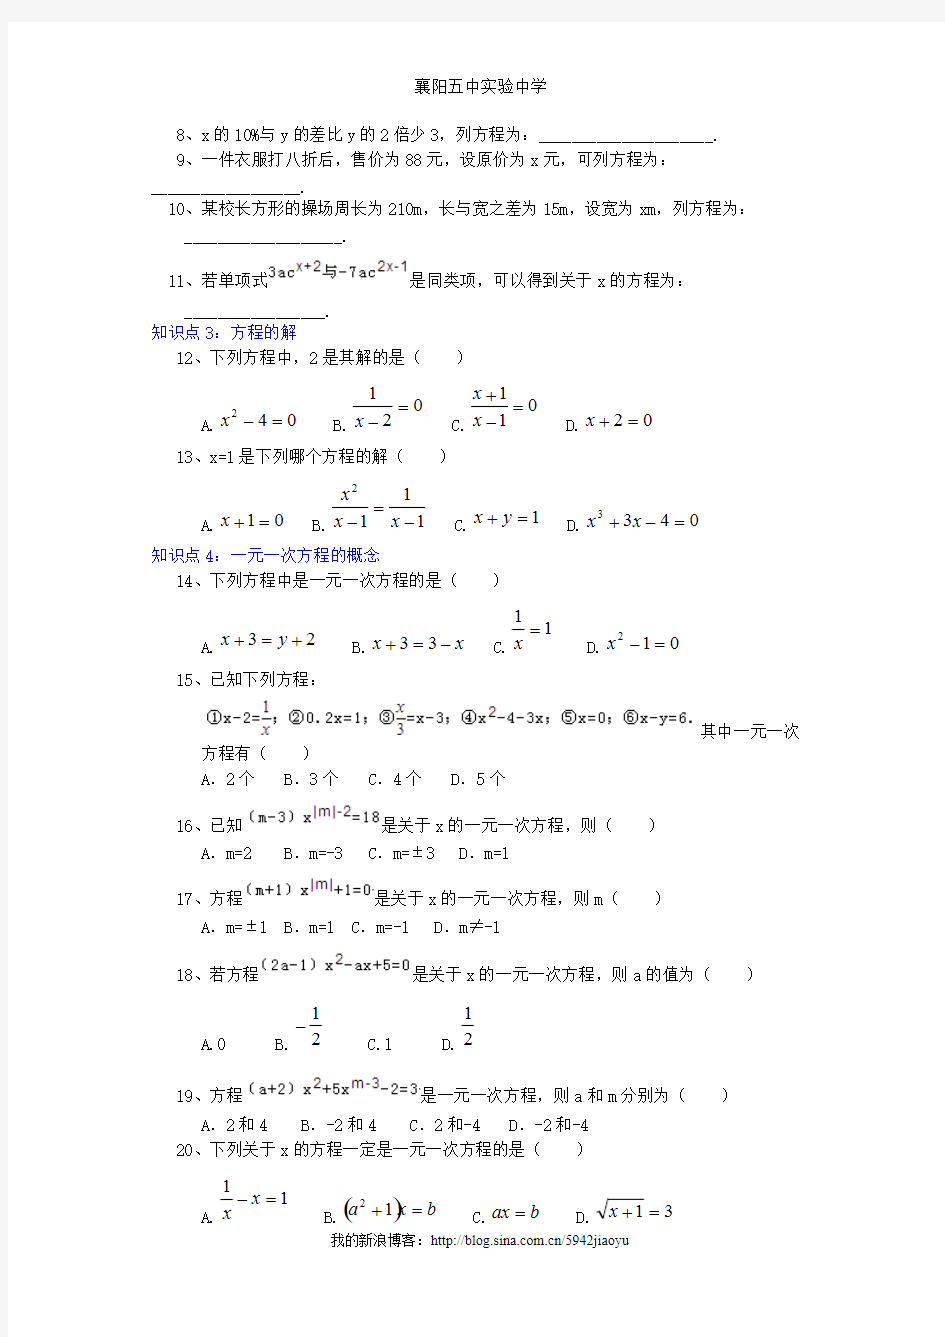 (完整)一元一次方程知识点总结与典型例题(人教版初中数学),推荐文档